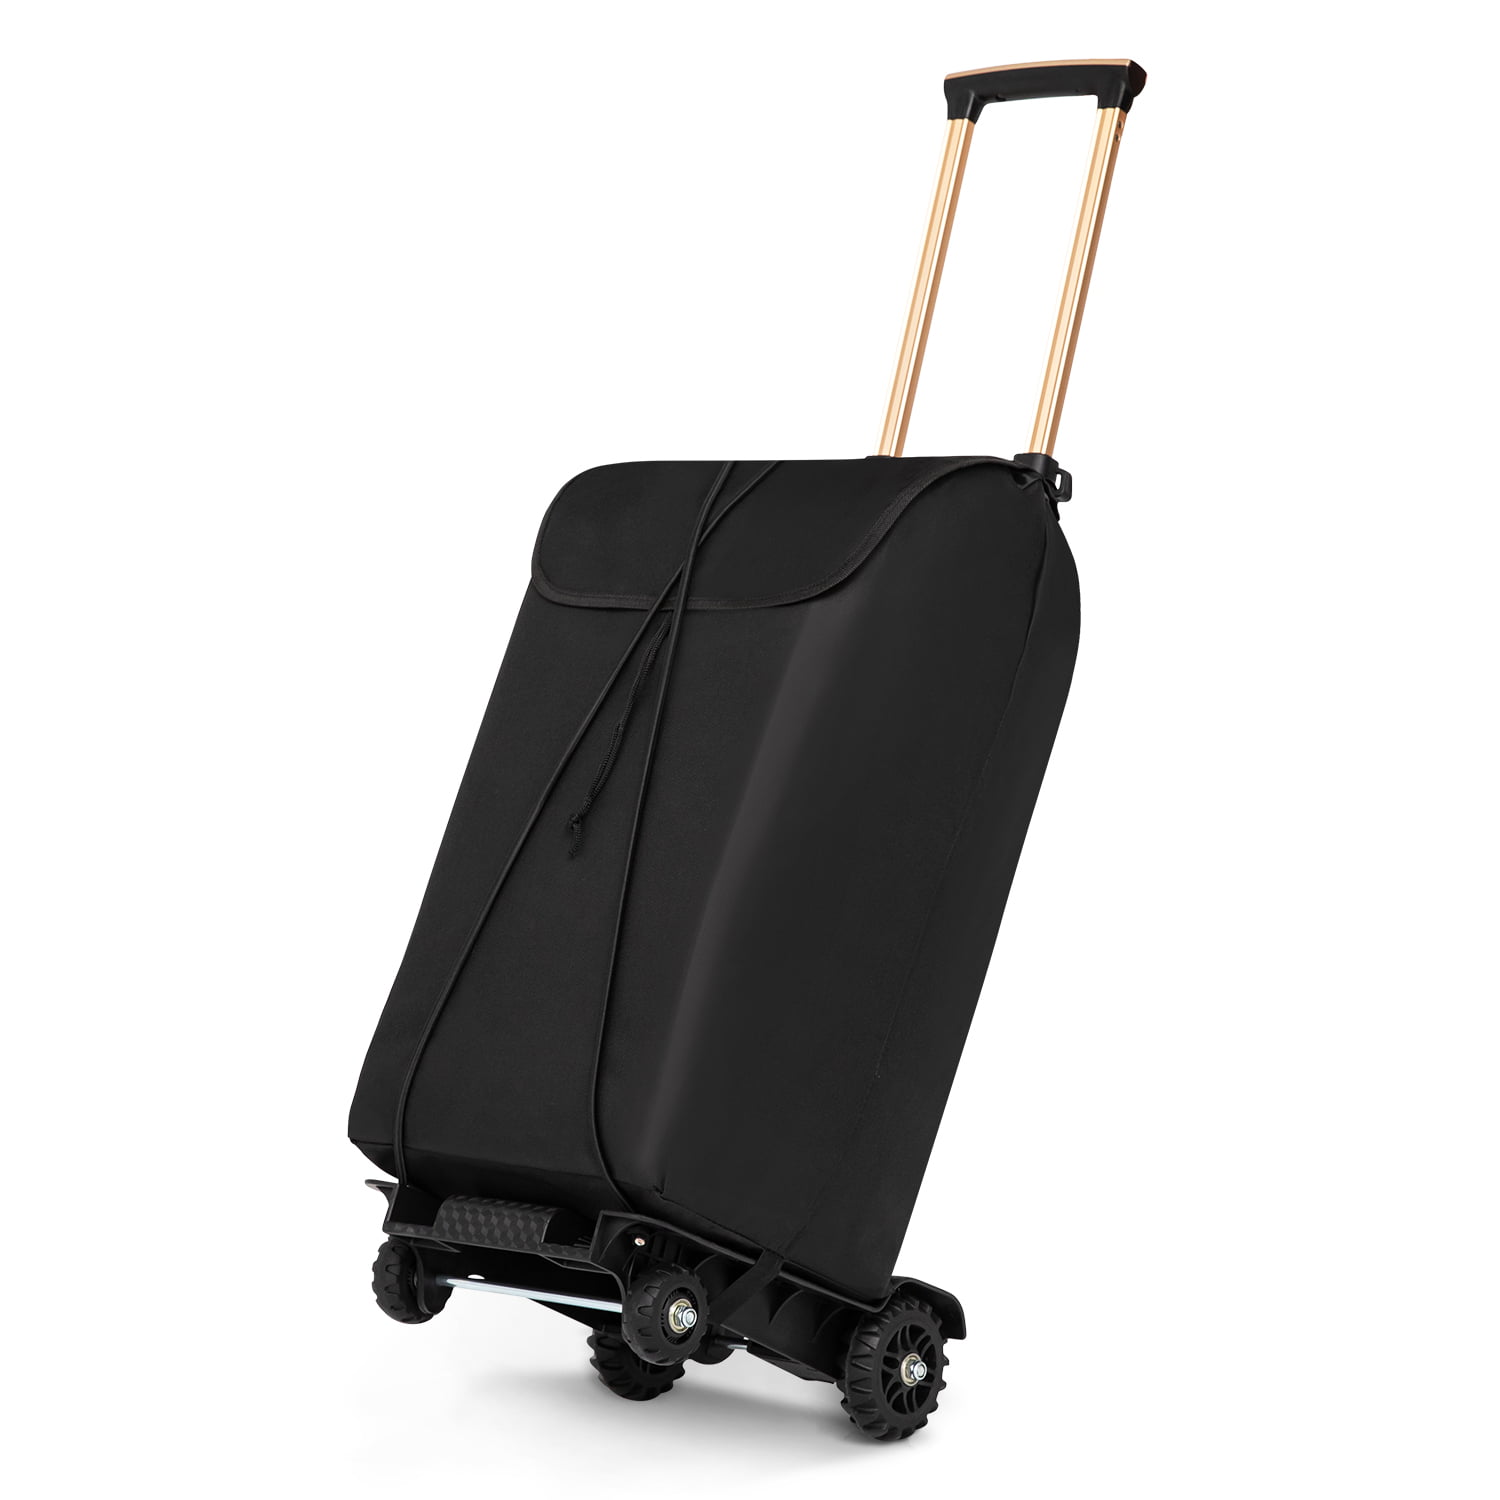 Gimify 2121G Oversized Luggage Cart Black 